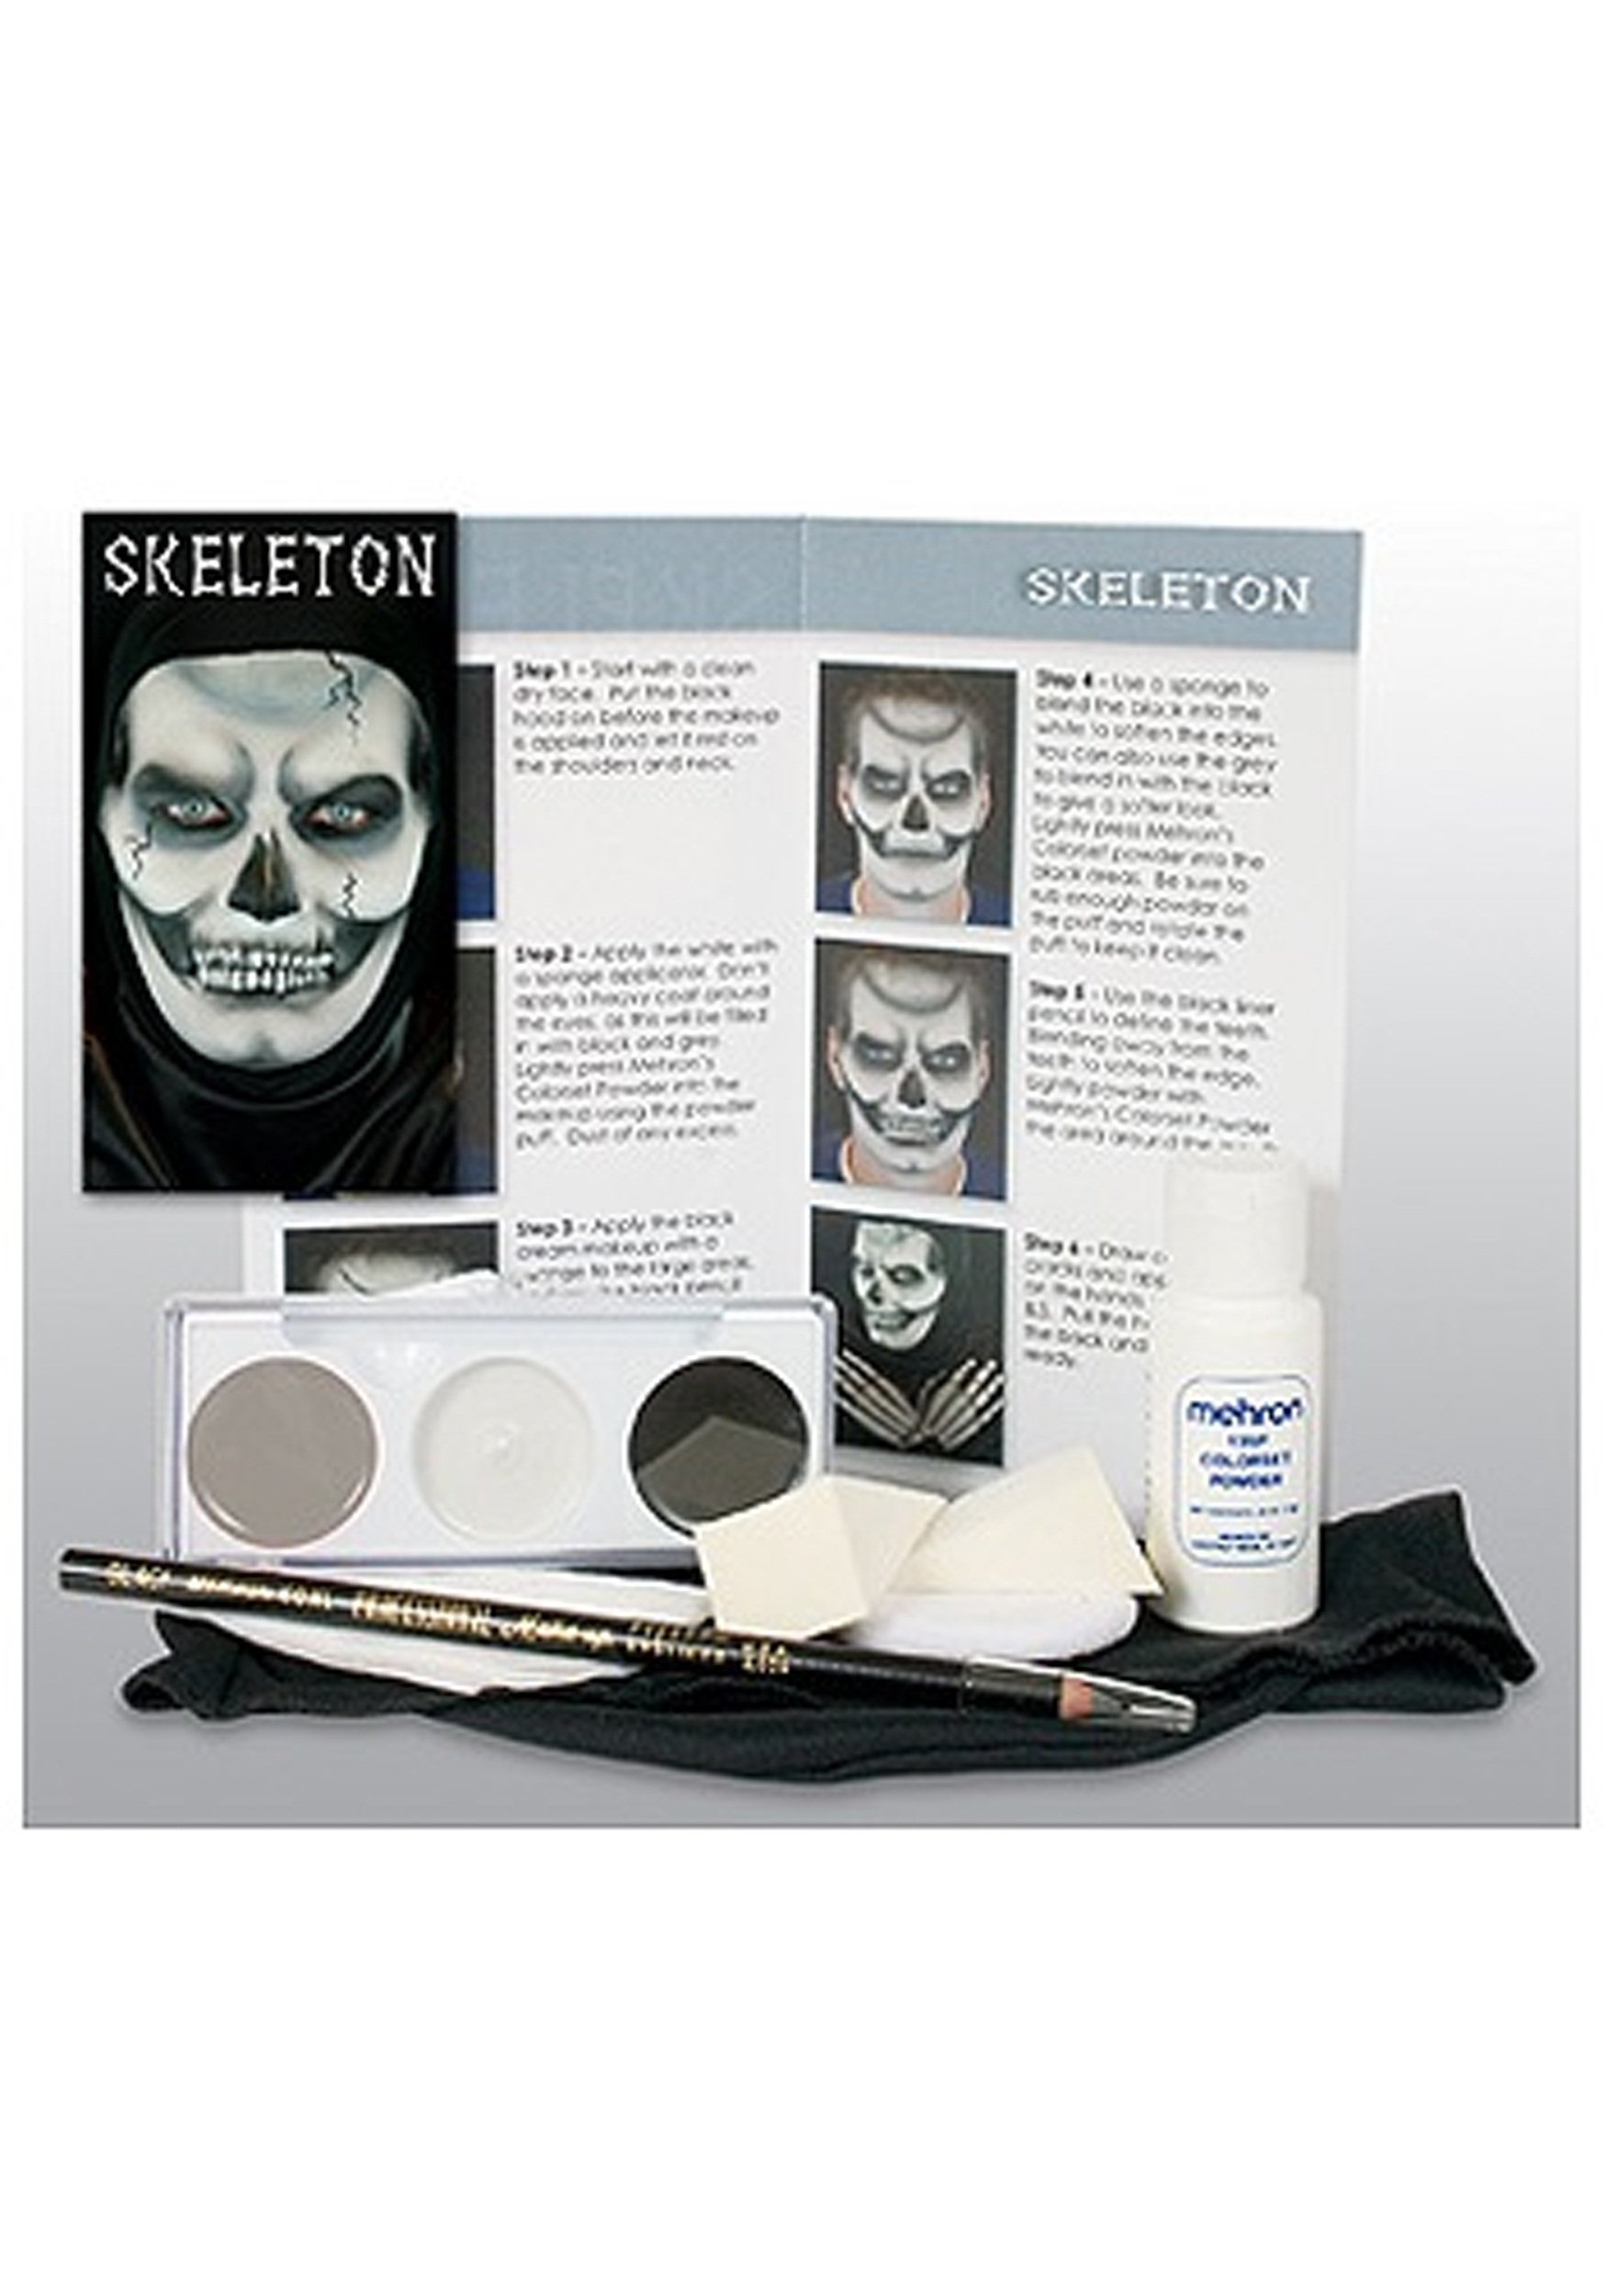 Skeleton Pro Makeup Kit